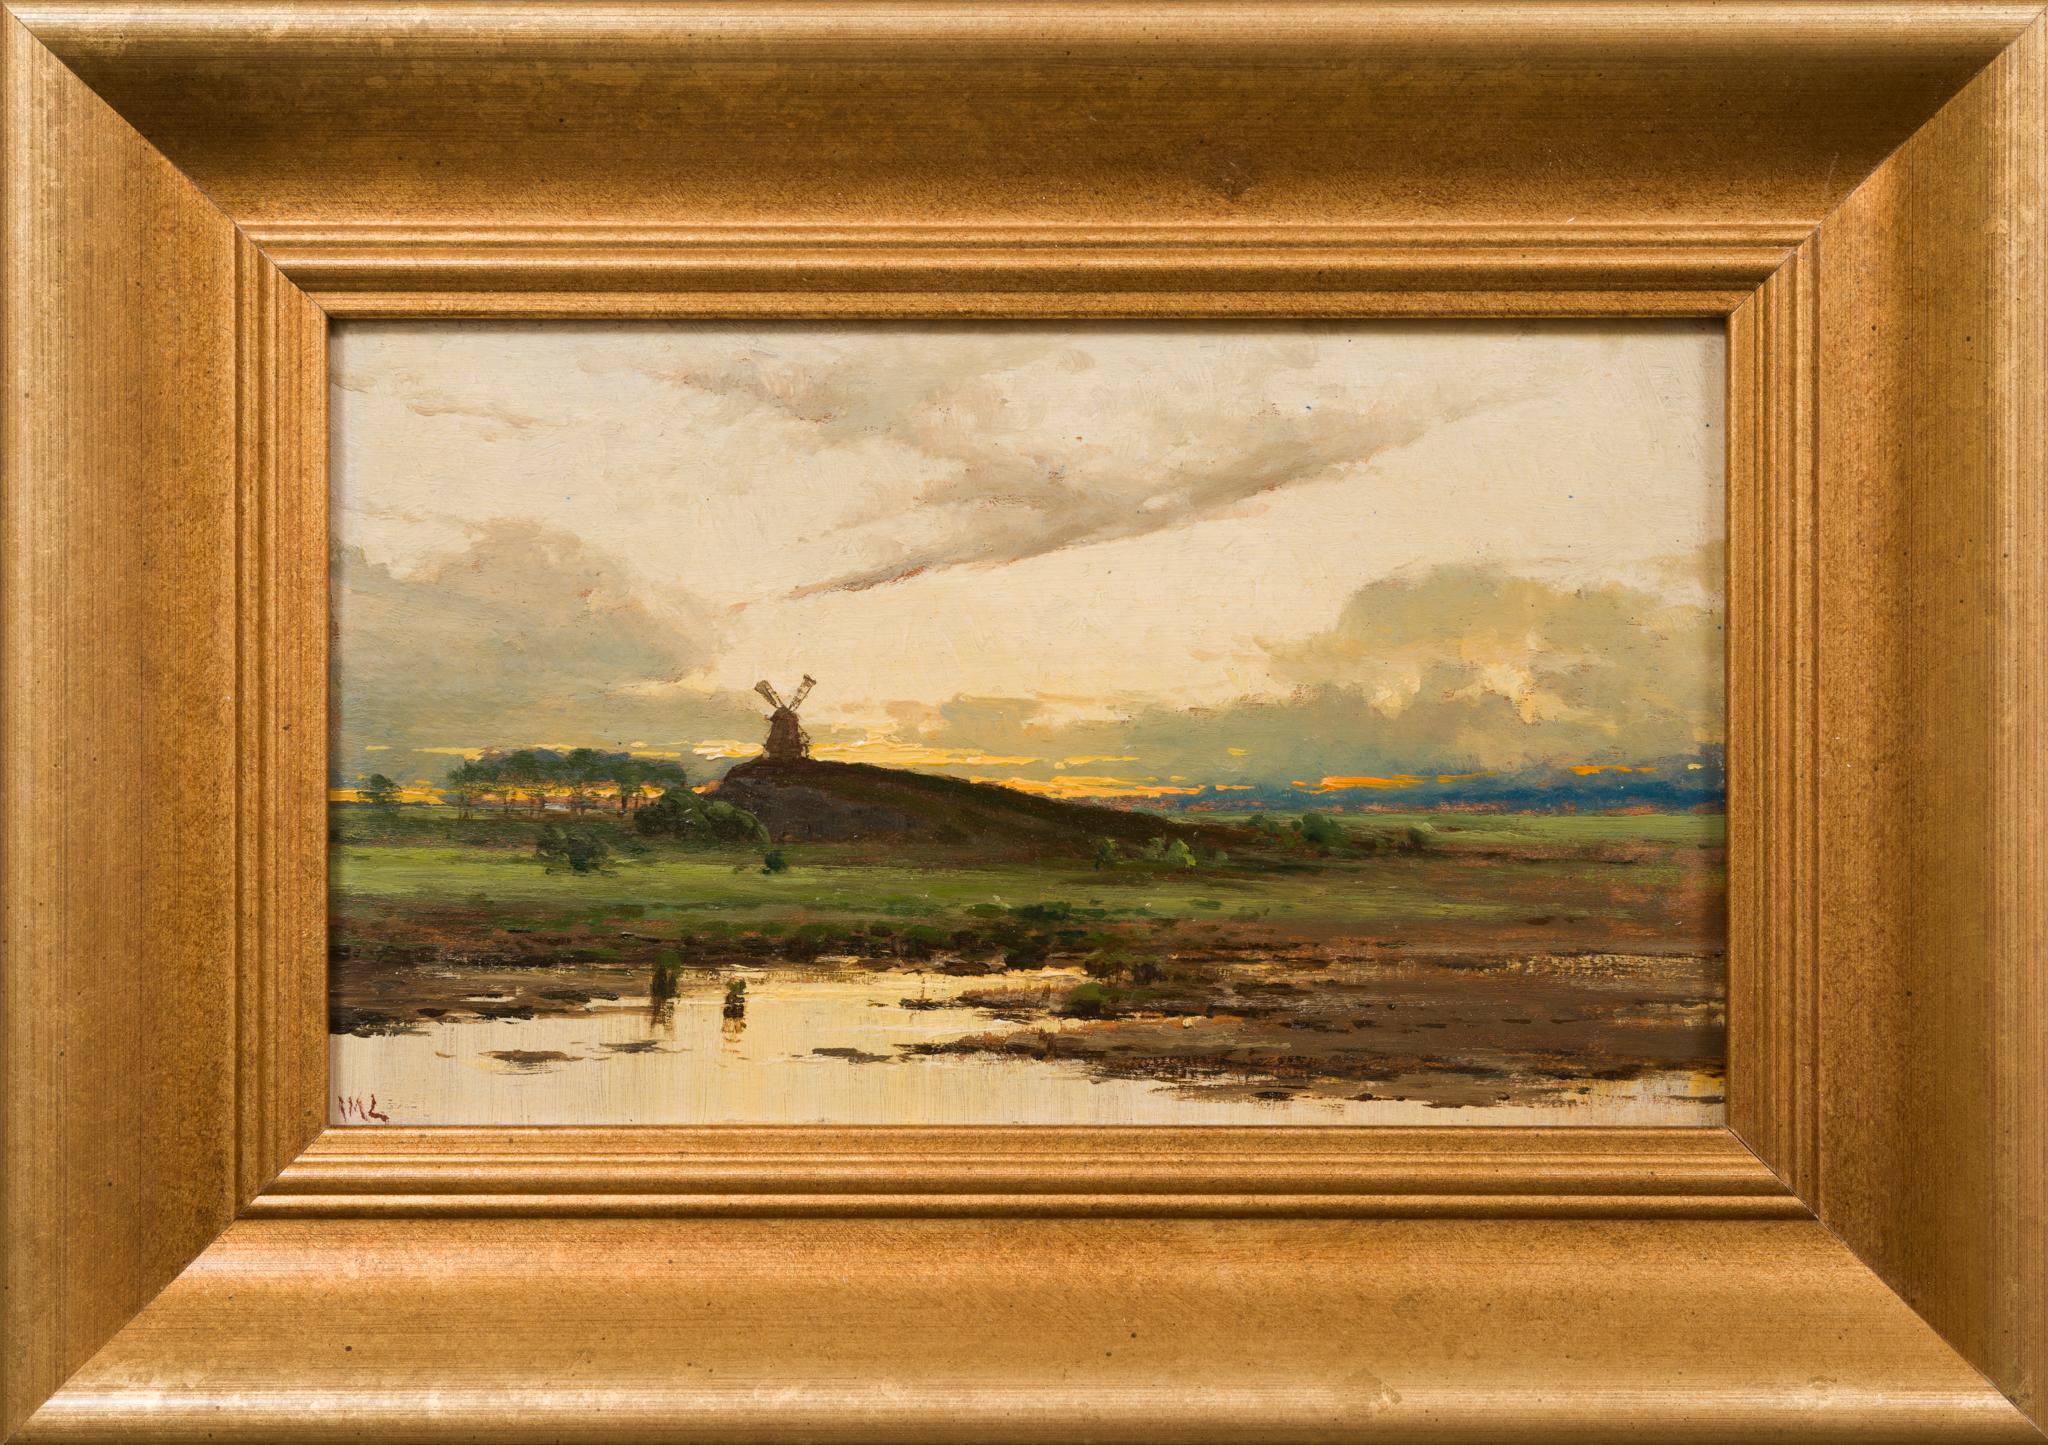 Landschaft mit Mühle bei Sonnenuntergang von dem schwedischen Künstler Mauritz Lindström – Painting von Arvid Mauritz Lindström